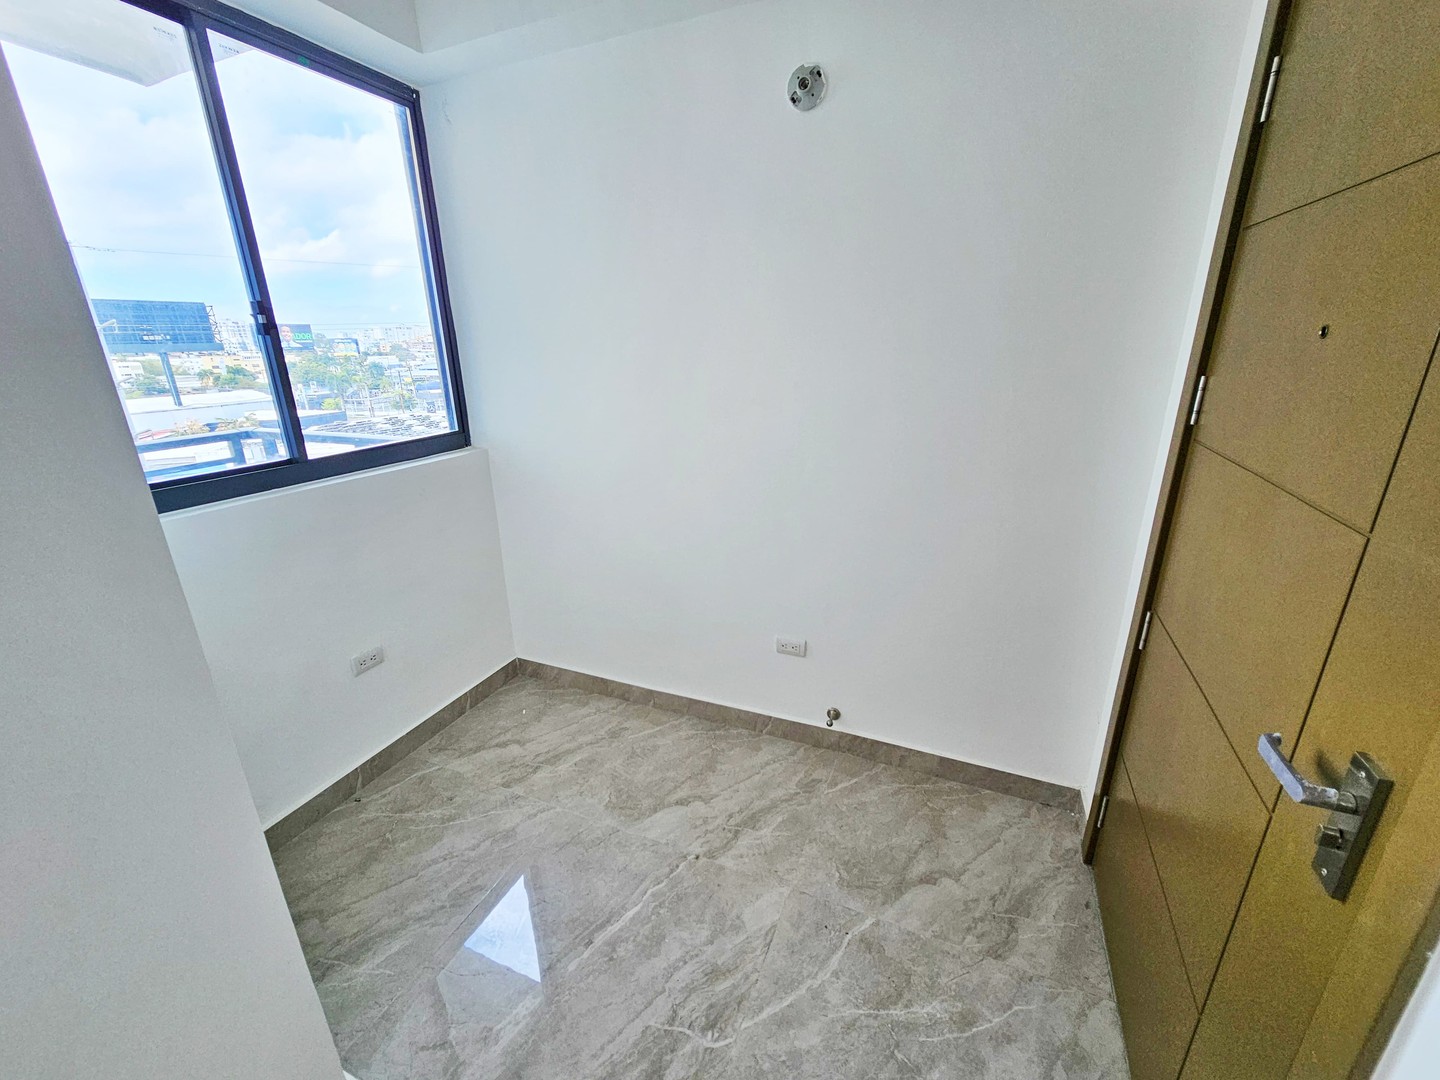 apartamentos - Apartamento NUEVO en Ensanche Paraíso.

Precio:RD$10,000,000.

- 136mt2 en total 9